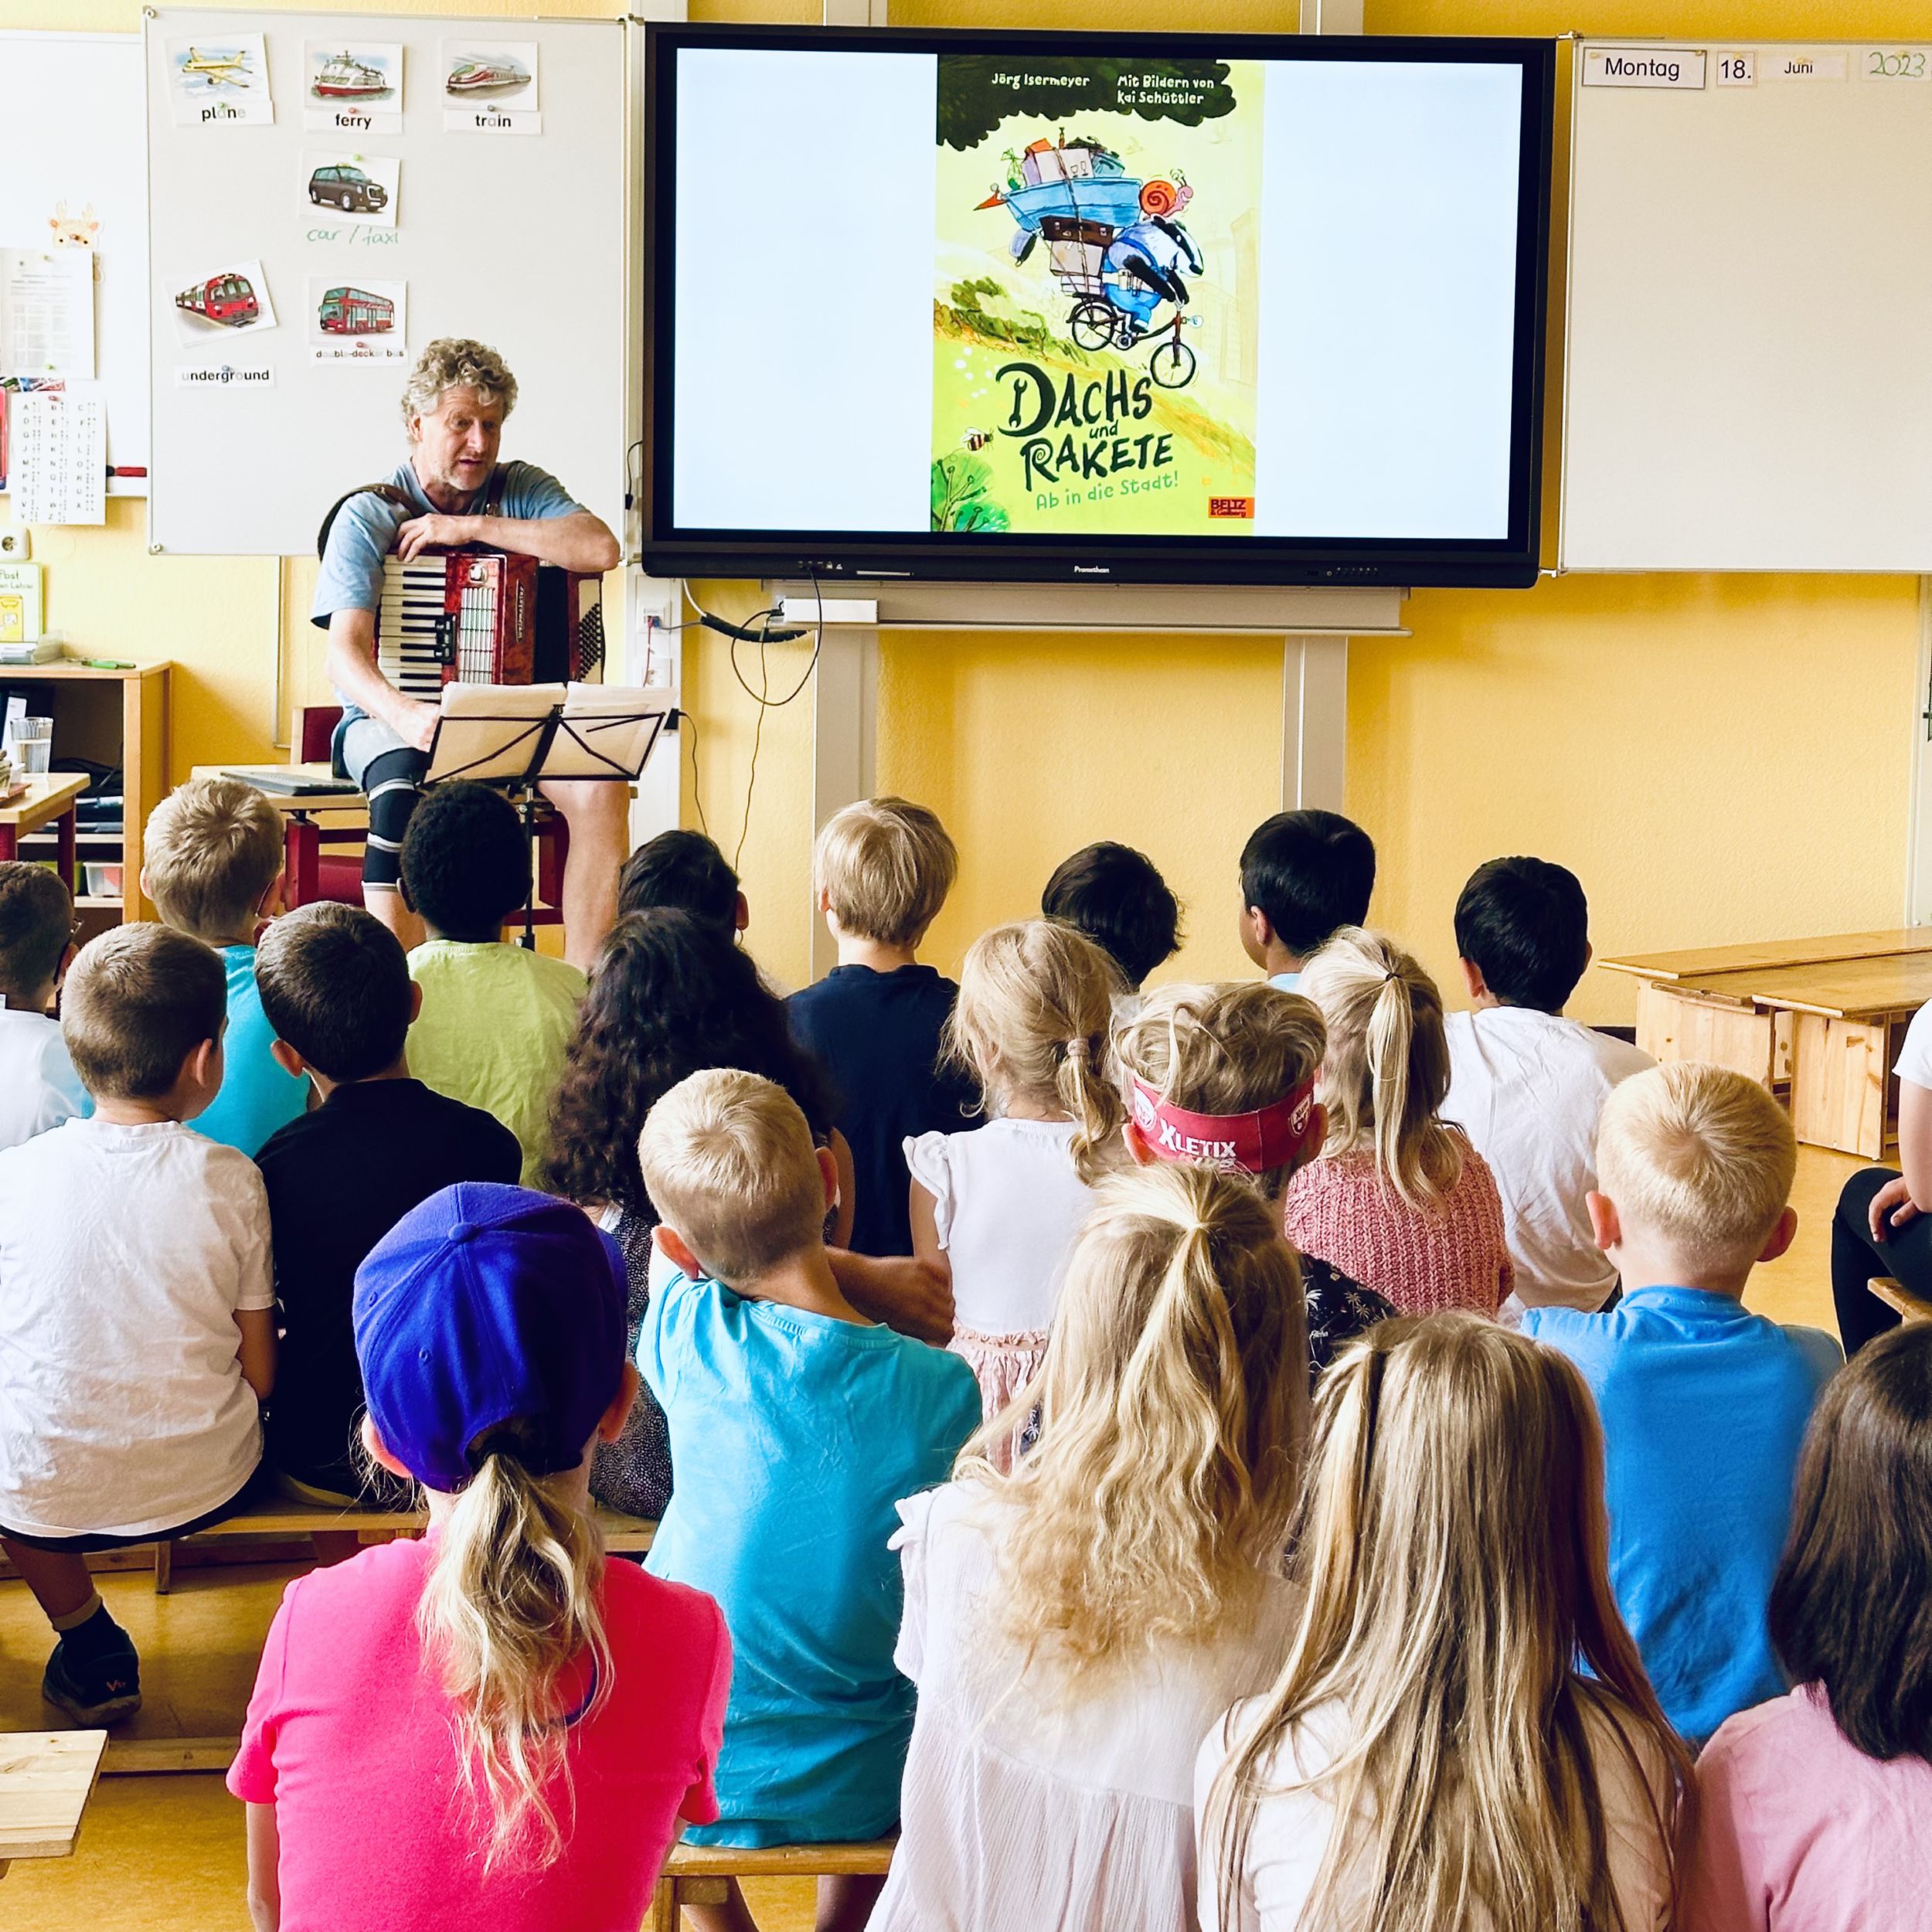 Insgesamt 70 Kinder an der Grundschule Wissenbach lauschen gespannt dem Autoren Jörg Isermeyer, als er von Dachs und Rakete erzählt. Foto: Lahn-Dill-Kreis